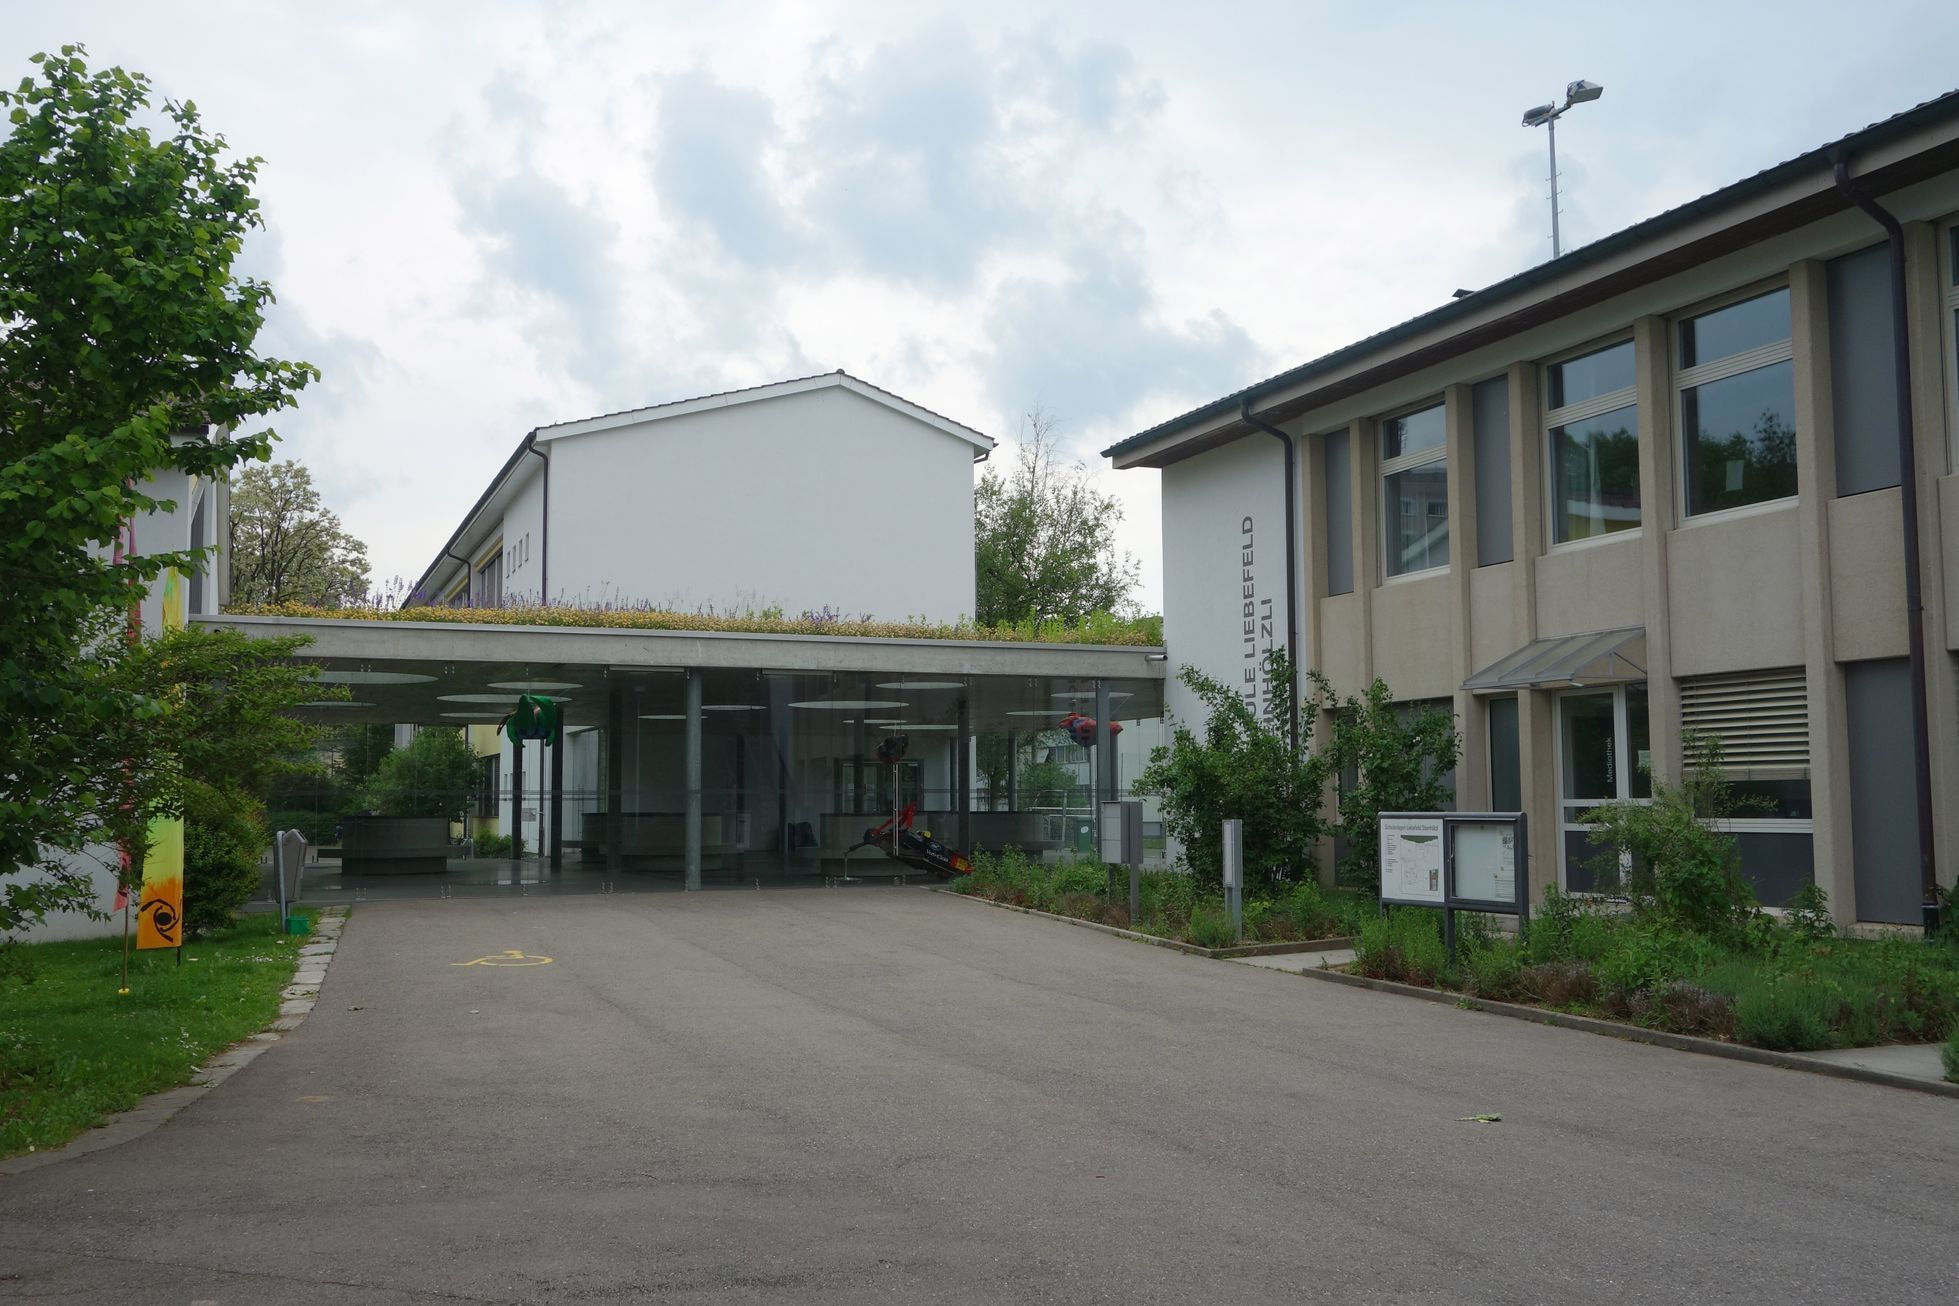 Švýcarská škola ve městě Köniz, kterou měl navštěvovat Kim Čong-un